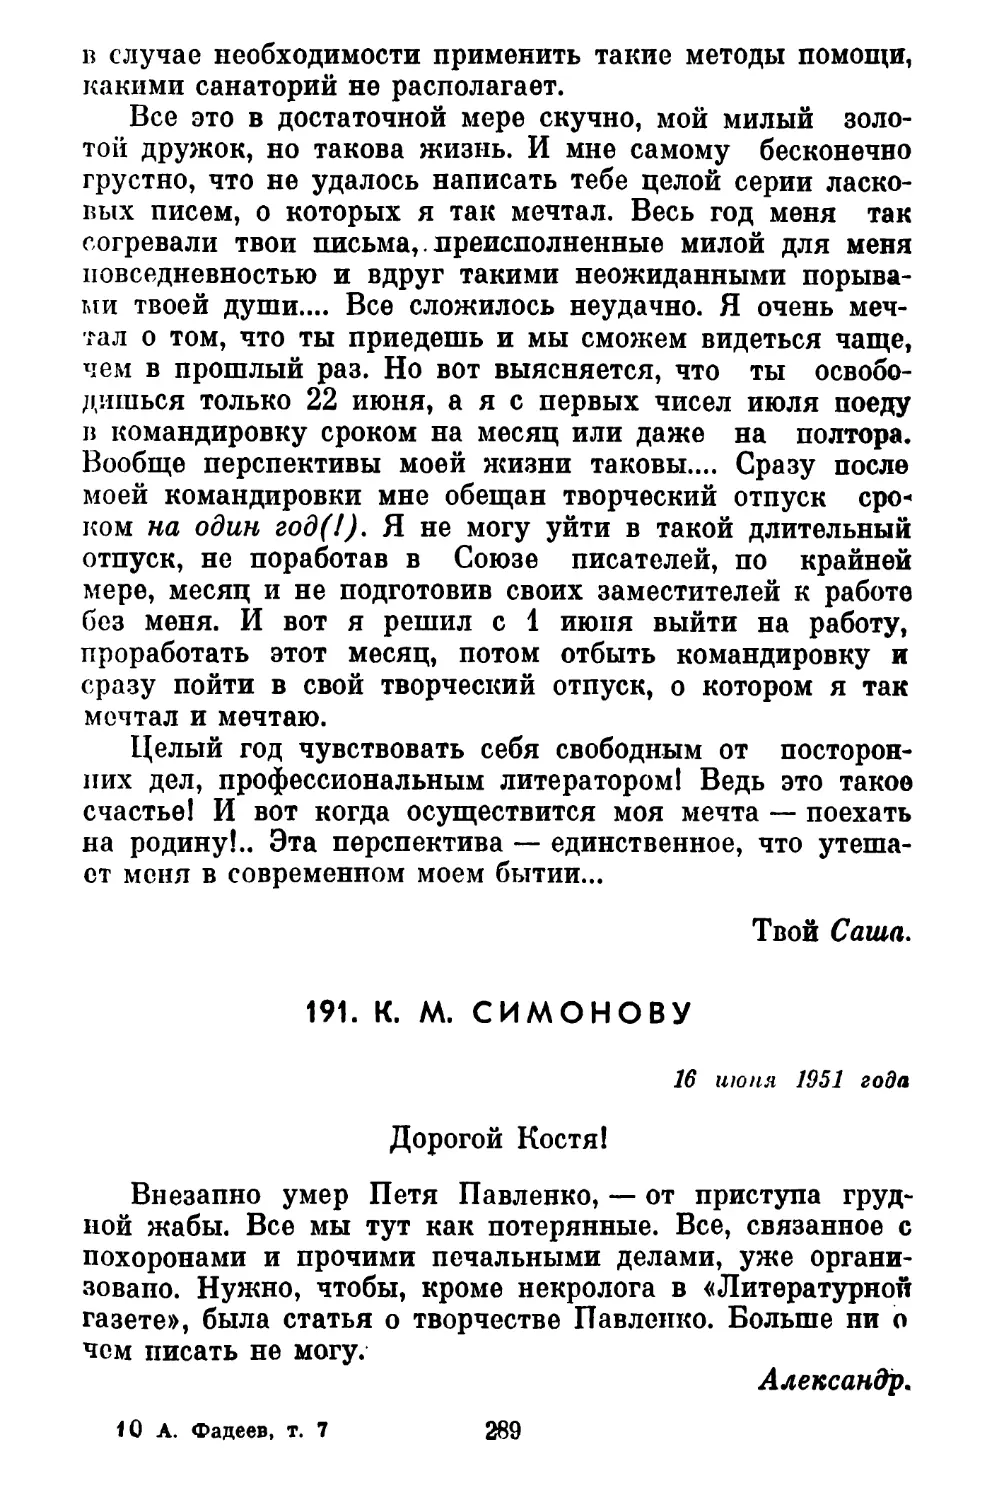 191. К. М. СИМОНОВУ